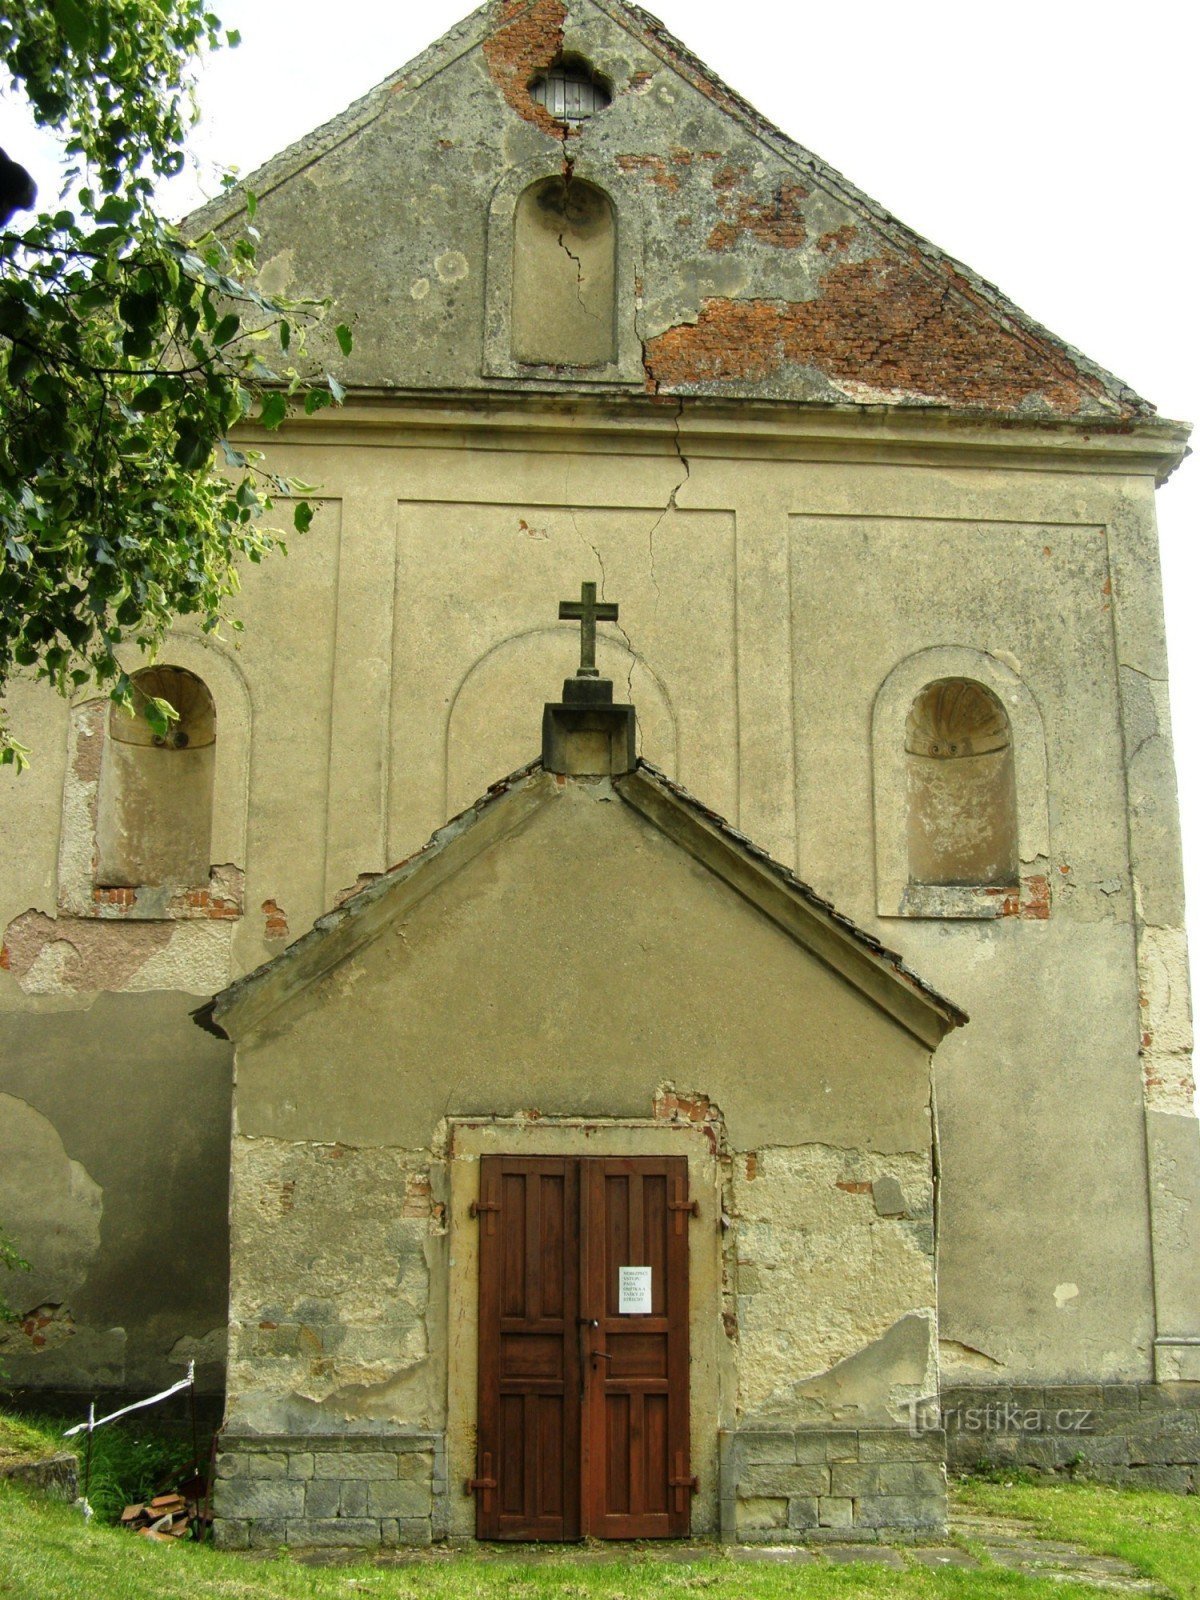 Zebín (Sedličky) - nhà thờ của các vị thánh